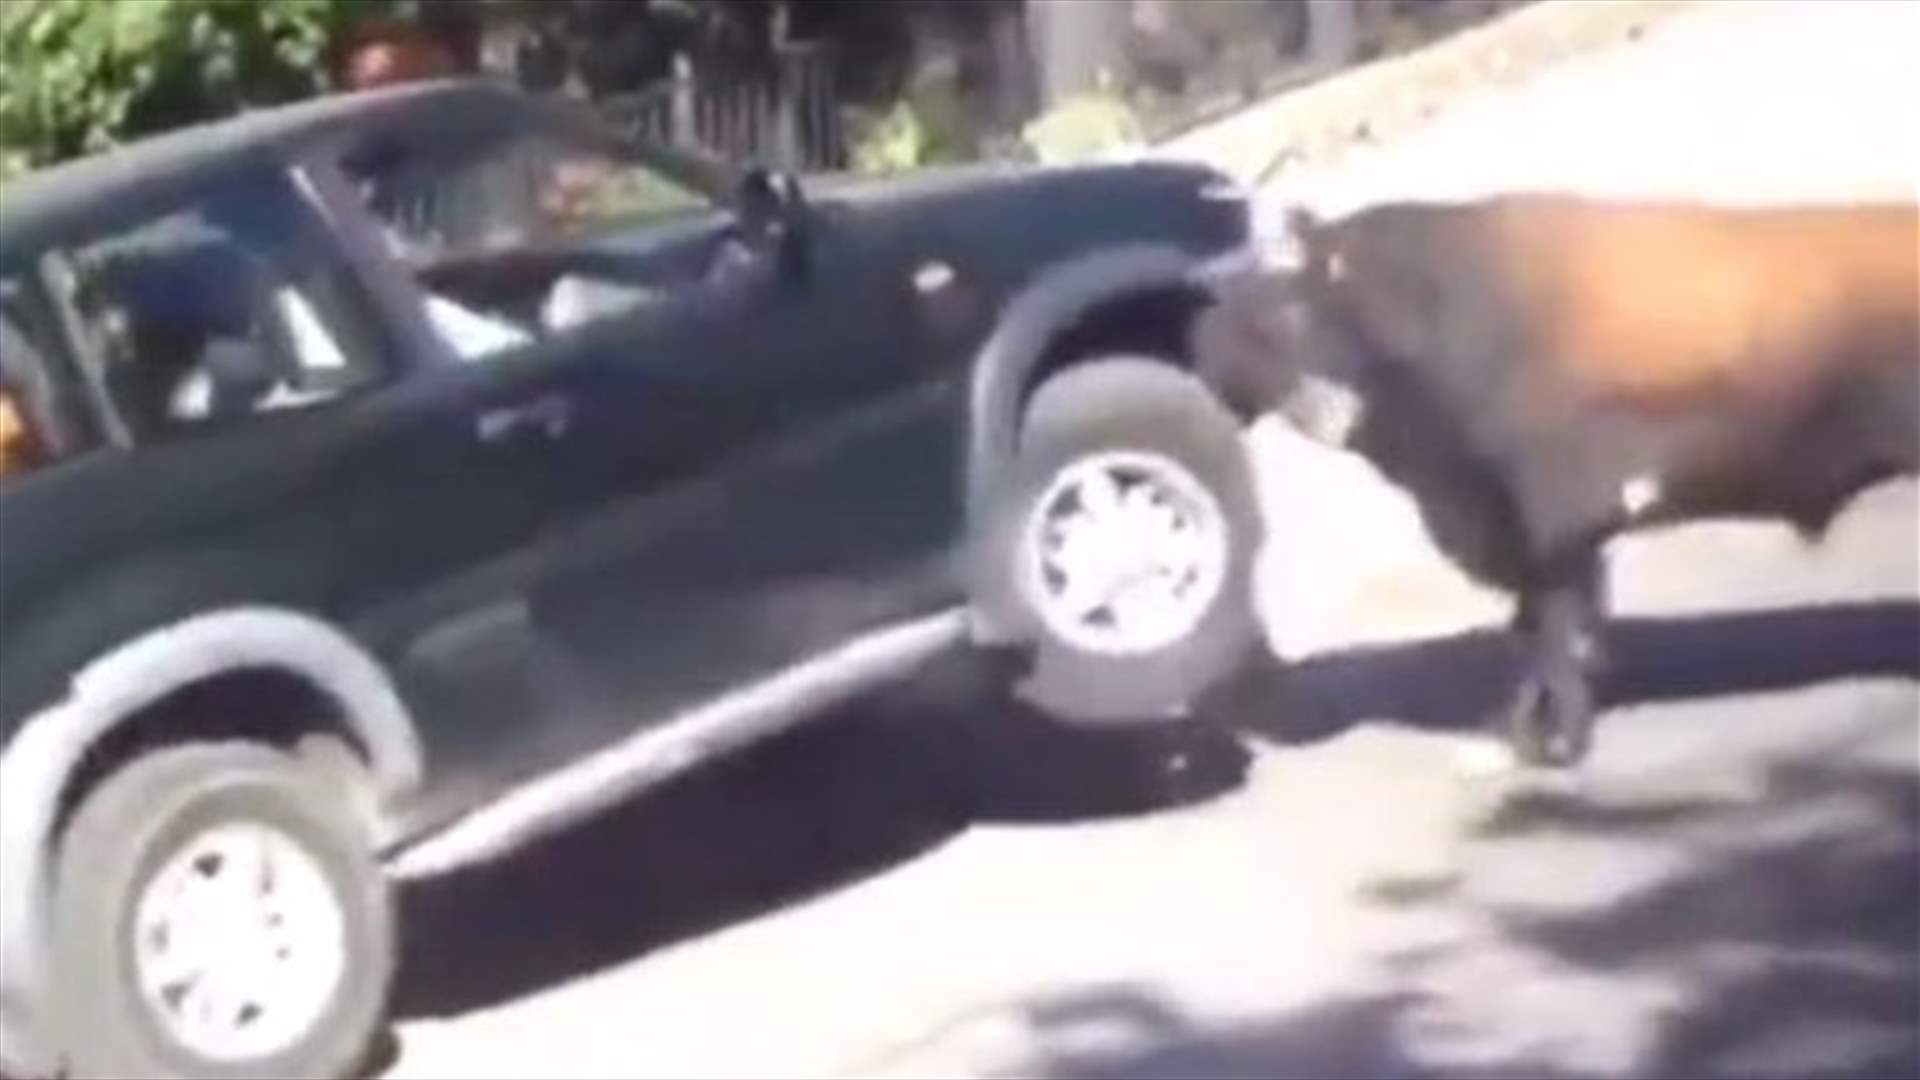 بالفيديو: ثور ينطح سيارة ويثير رعب الركاب بداخلها!